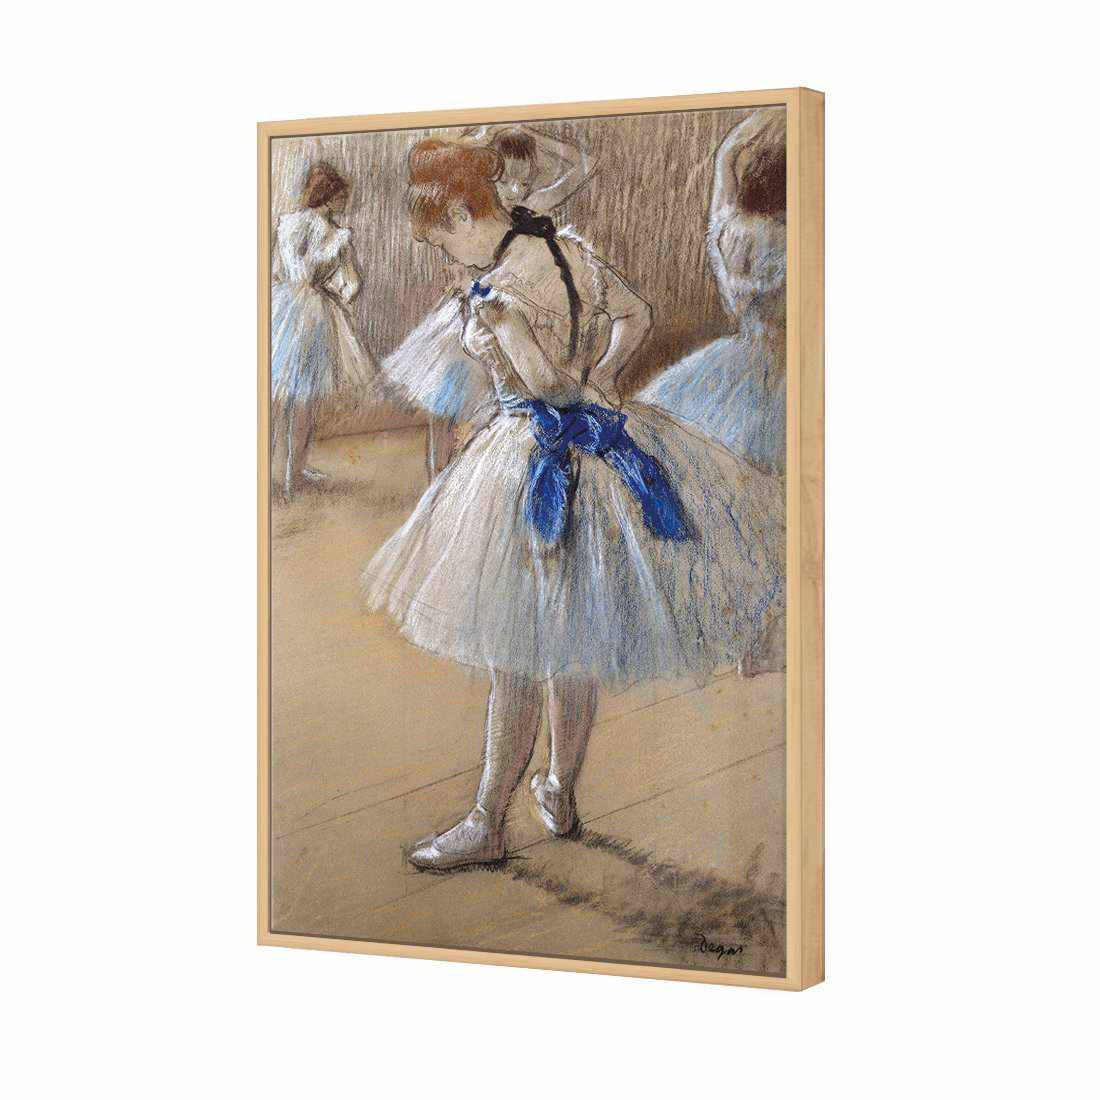 Dancer by Edgar Degas Canvas Art-Canvas-Wall Art Designs-45x30cm-Canvas - Oak Frame-Wall Art Designs